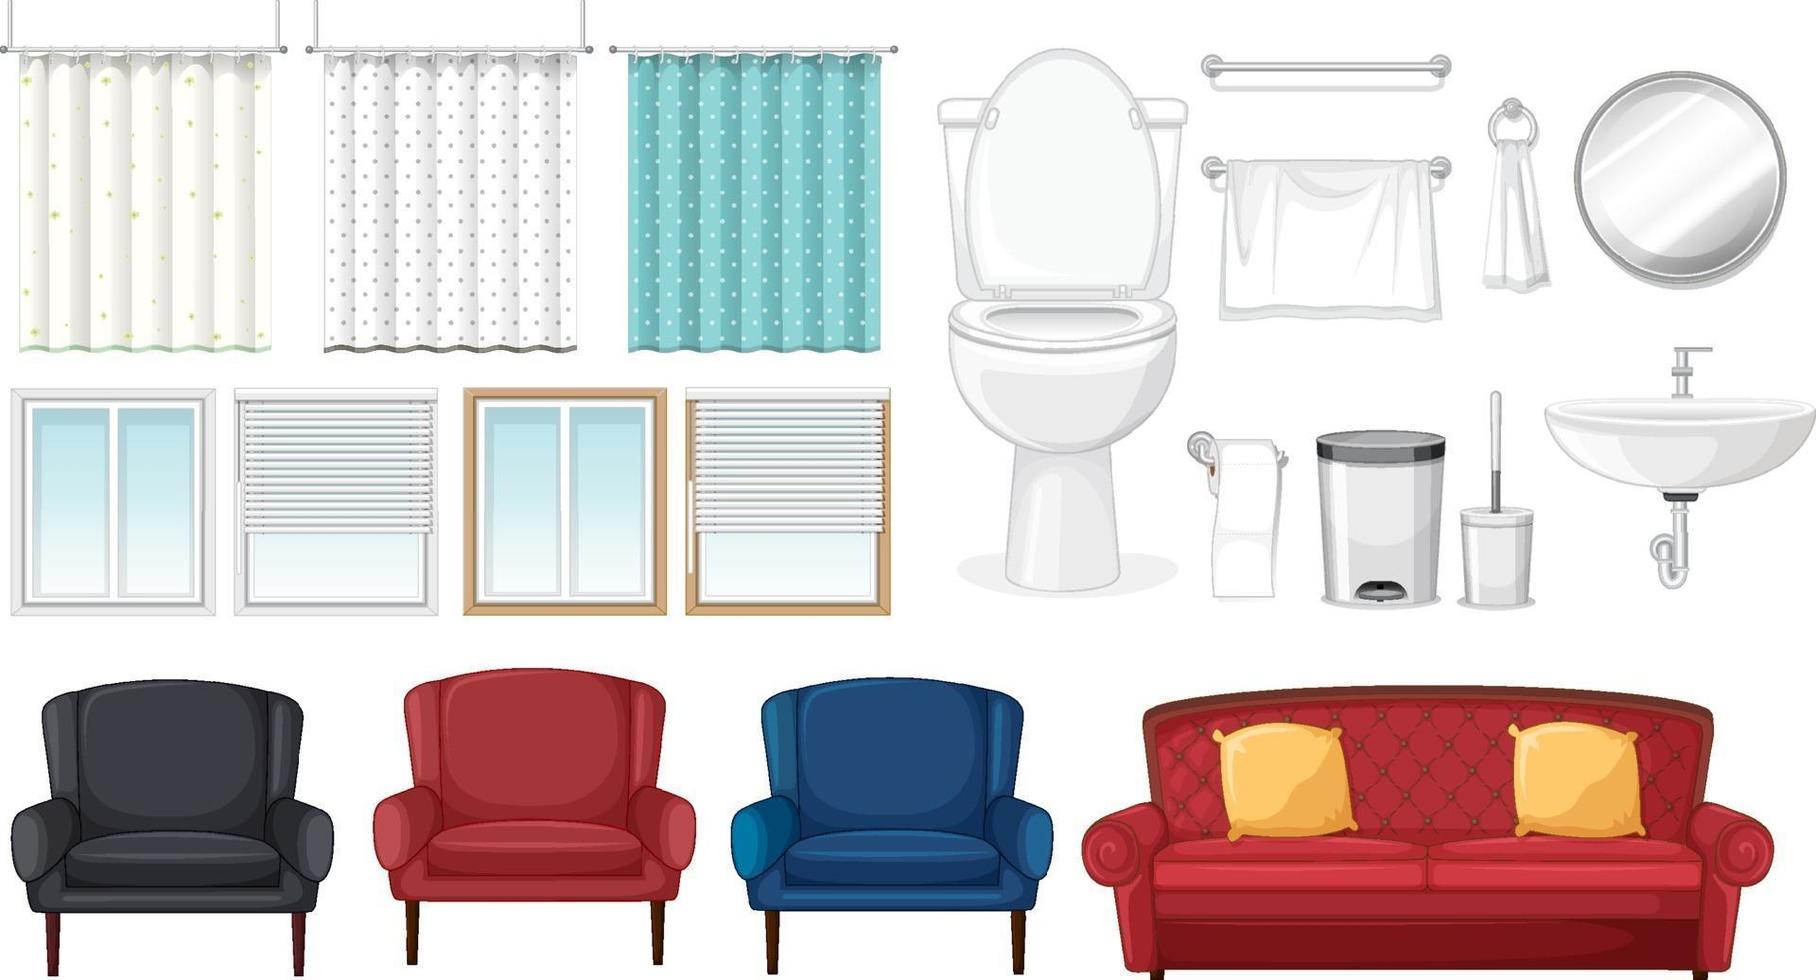 Conjunto de muebles para diseño de interiores sobre fondo blanco. vector